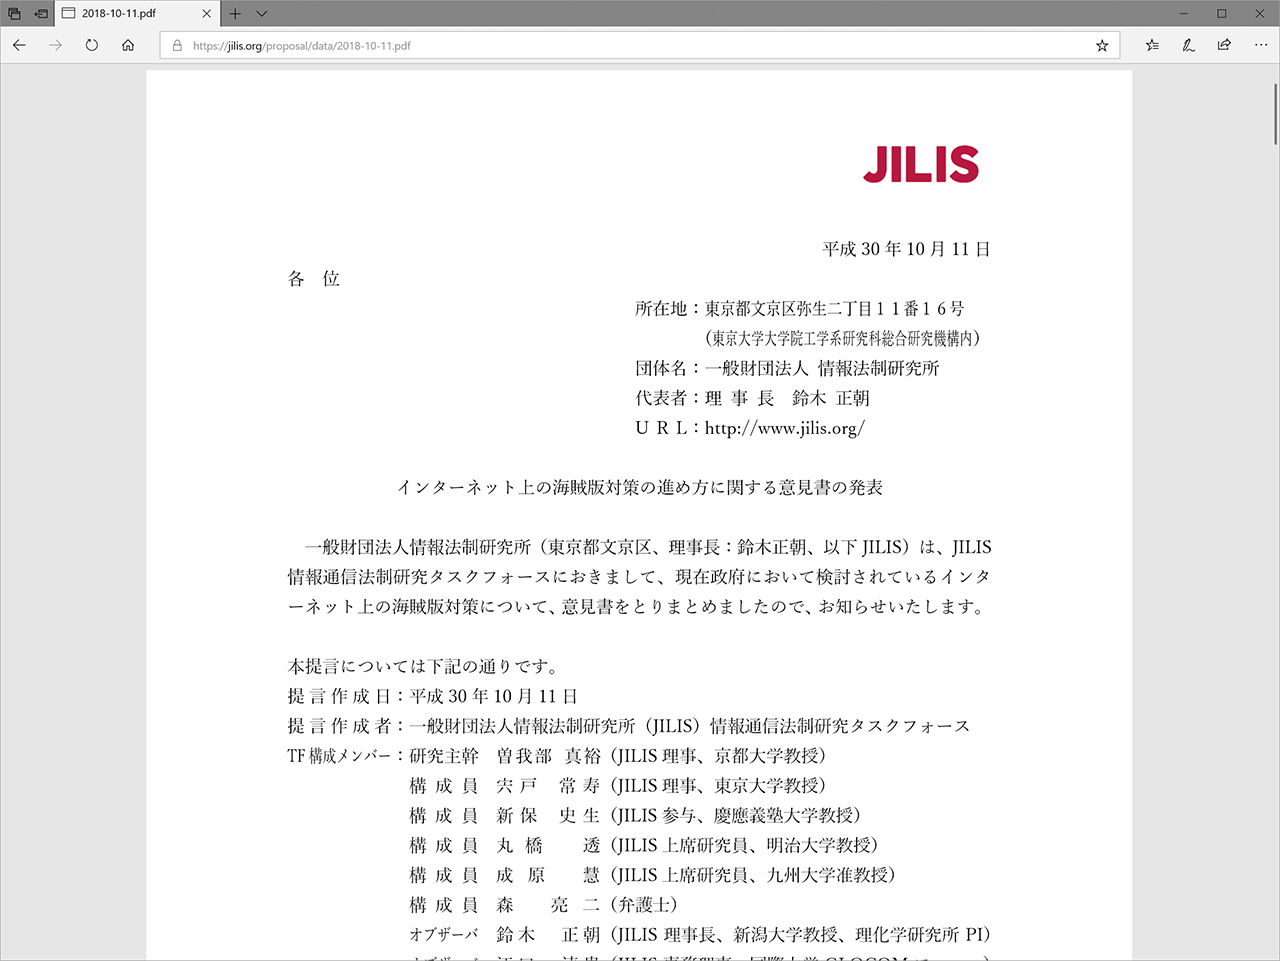 海賊版サイト運営者の情報開示に成功した弁護士 山口貴士氏と情報法制研究所 Jilis が 政府検討のブロッキングには前提条件に重大な過誤があるとの意見書を発表 Hon Jp News Blog